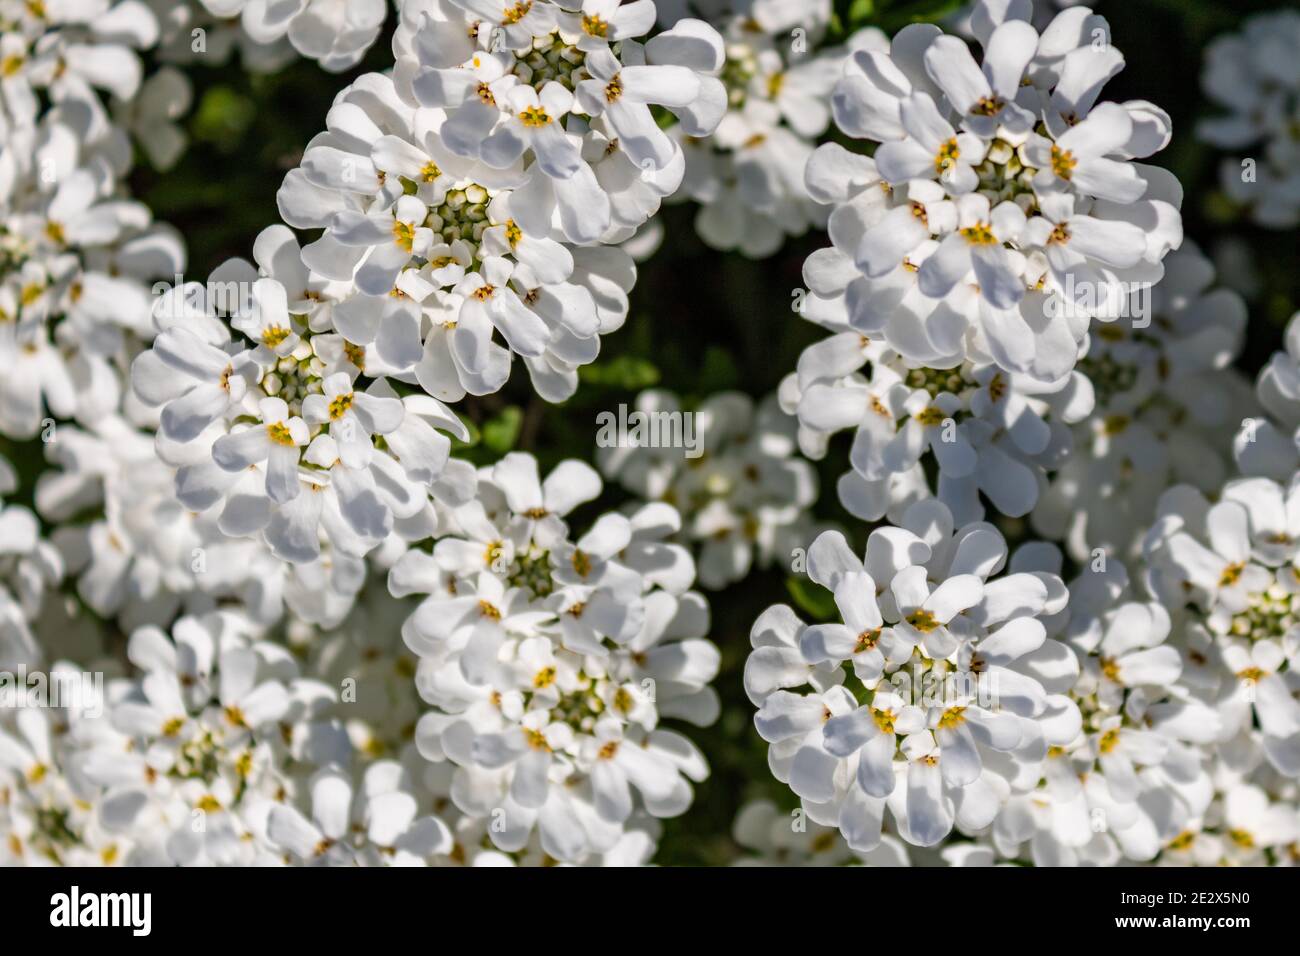 Bouquet de fleurs blanches de candytuft à feuilles persistantes (Iberis sempervirens) au printemps, vue de dessus et plein cadre Banque D'Images